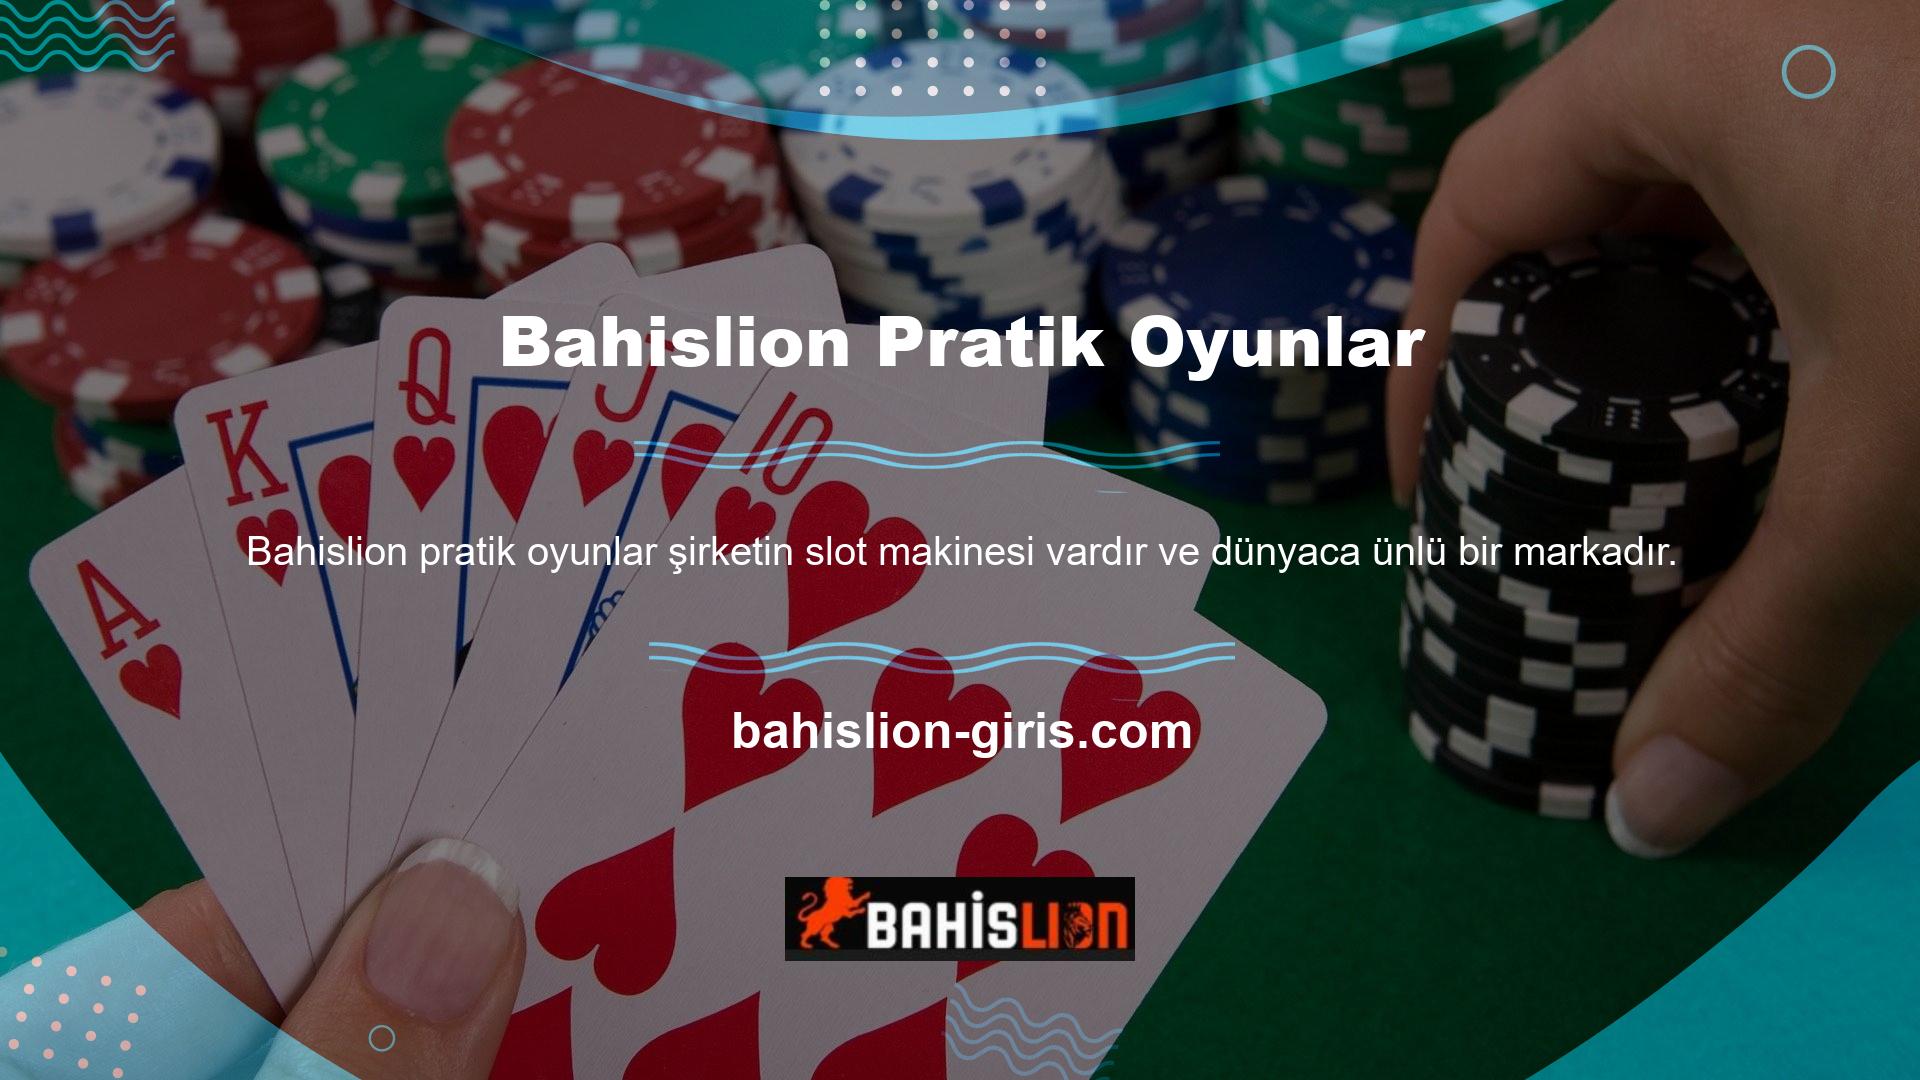 Şirketin programlama uzmanları tarafından geliştirilen Bahislion pratik oyunları sitede popüler oldu